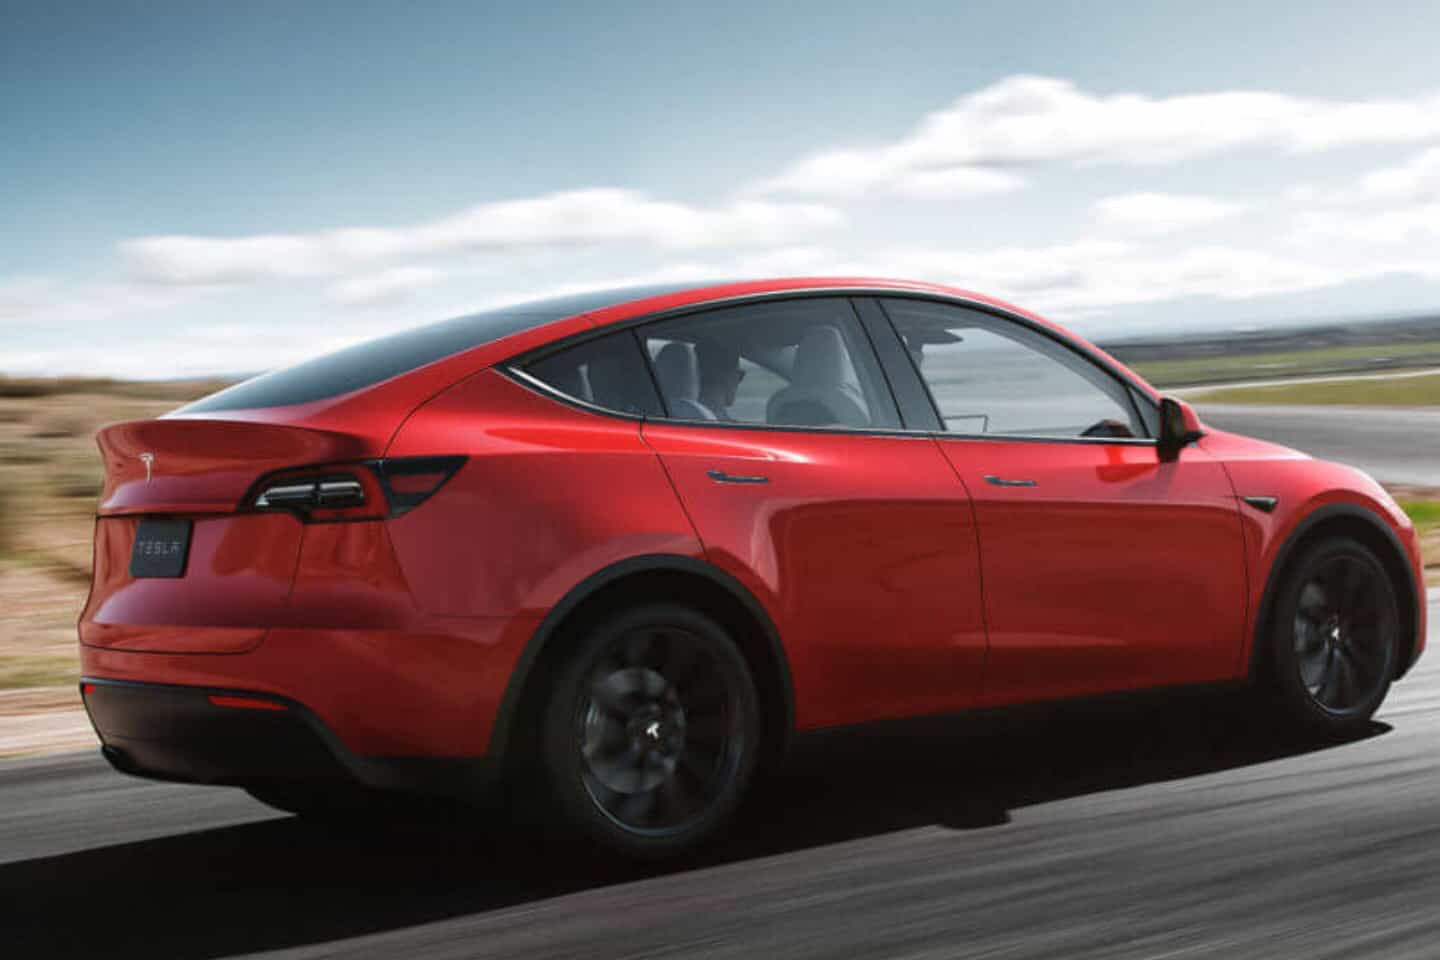 Tesla เปิดตัว Model Y | SUV ไฟฟ้าน้องเล็กในราคาประหยัด 5